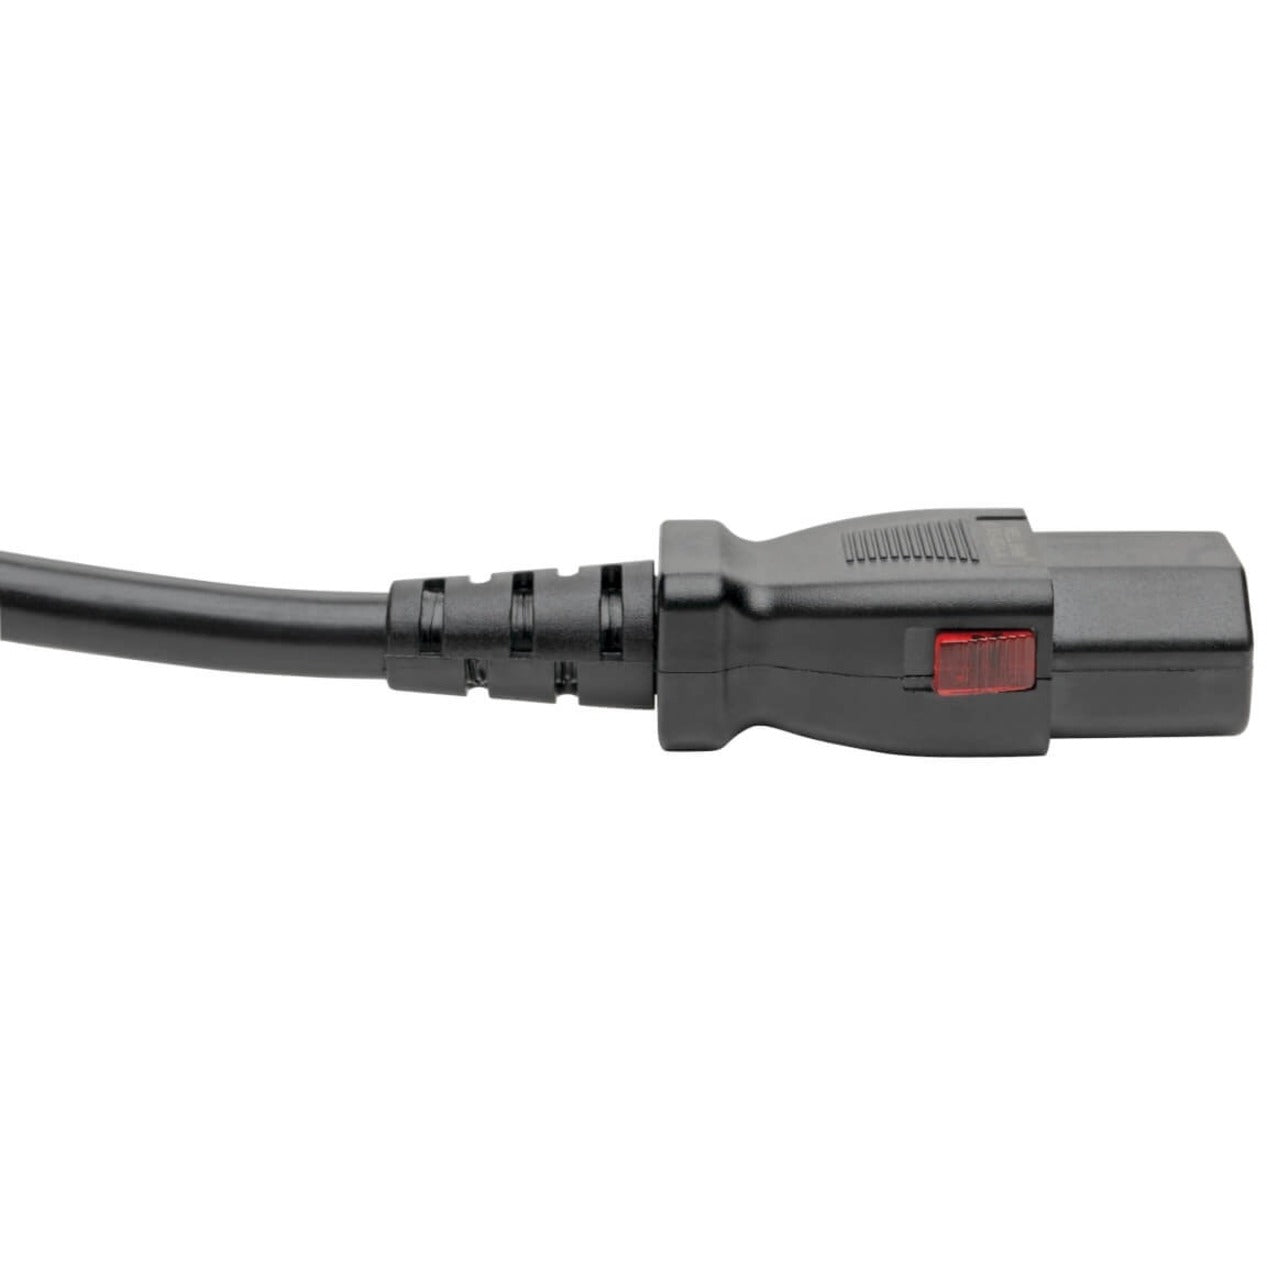 Tripp Lite by Eaton P004-L10 Power Extension Cord